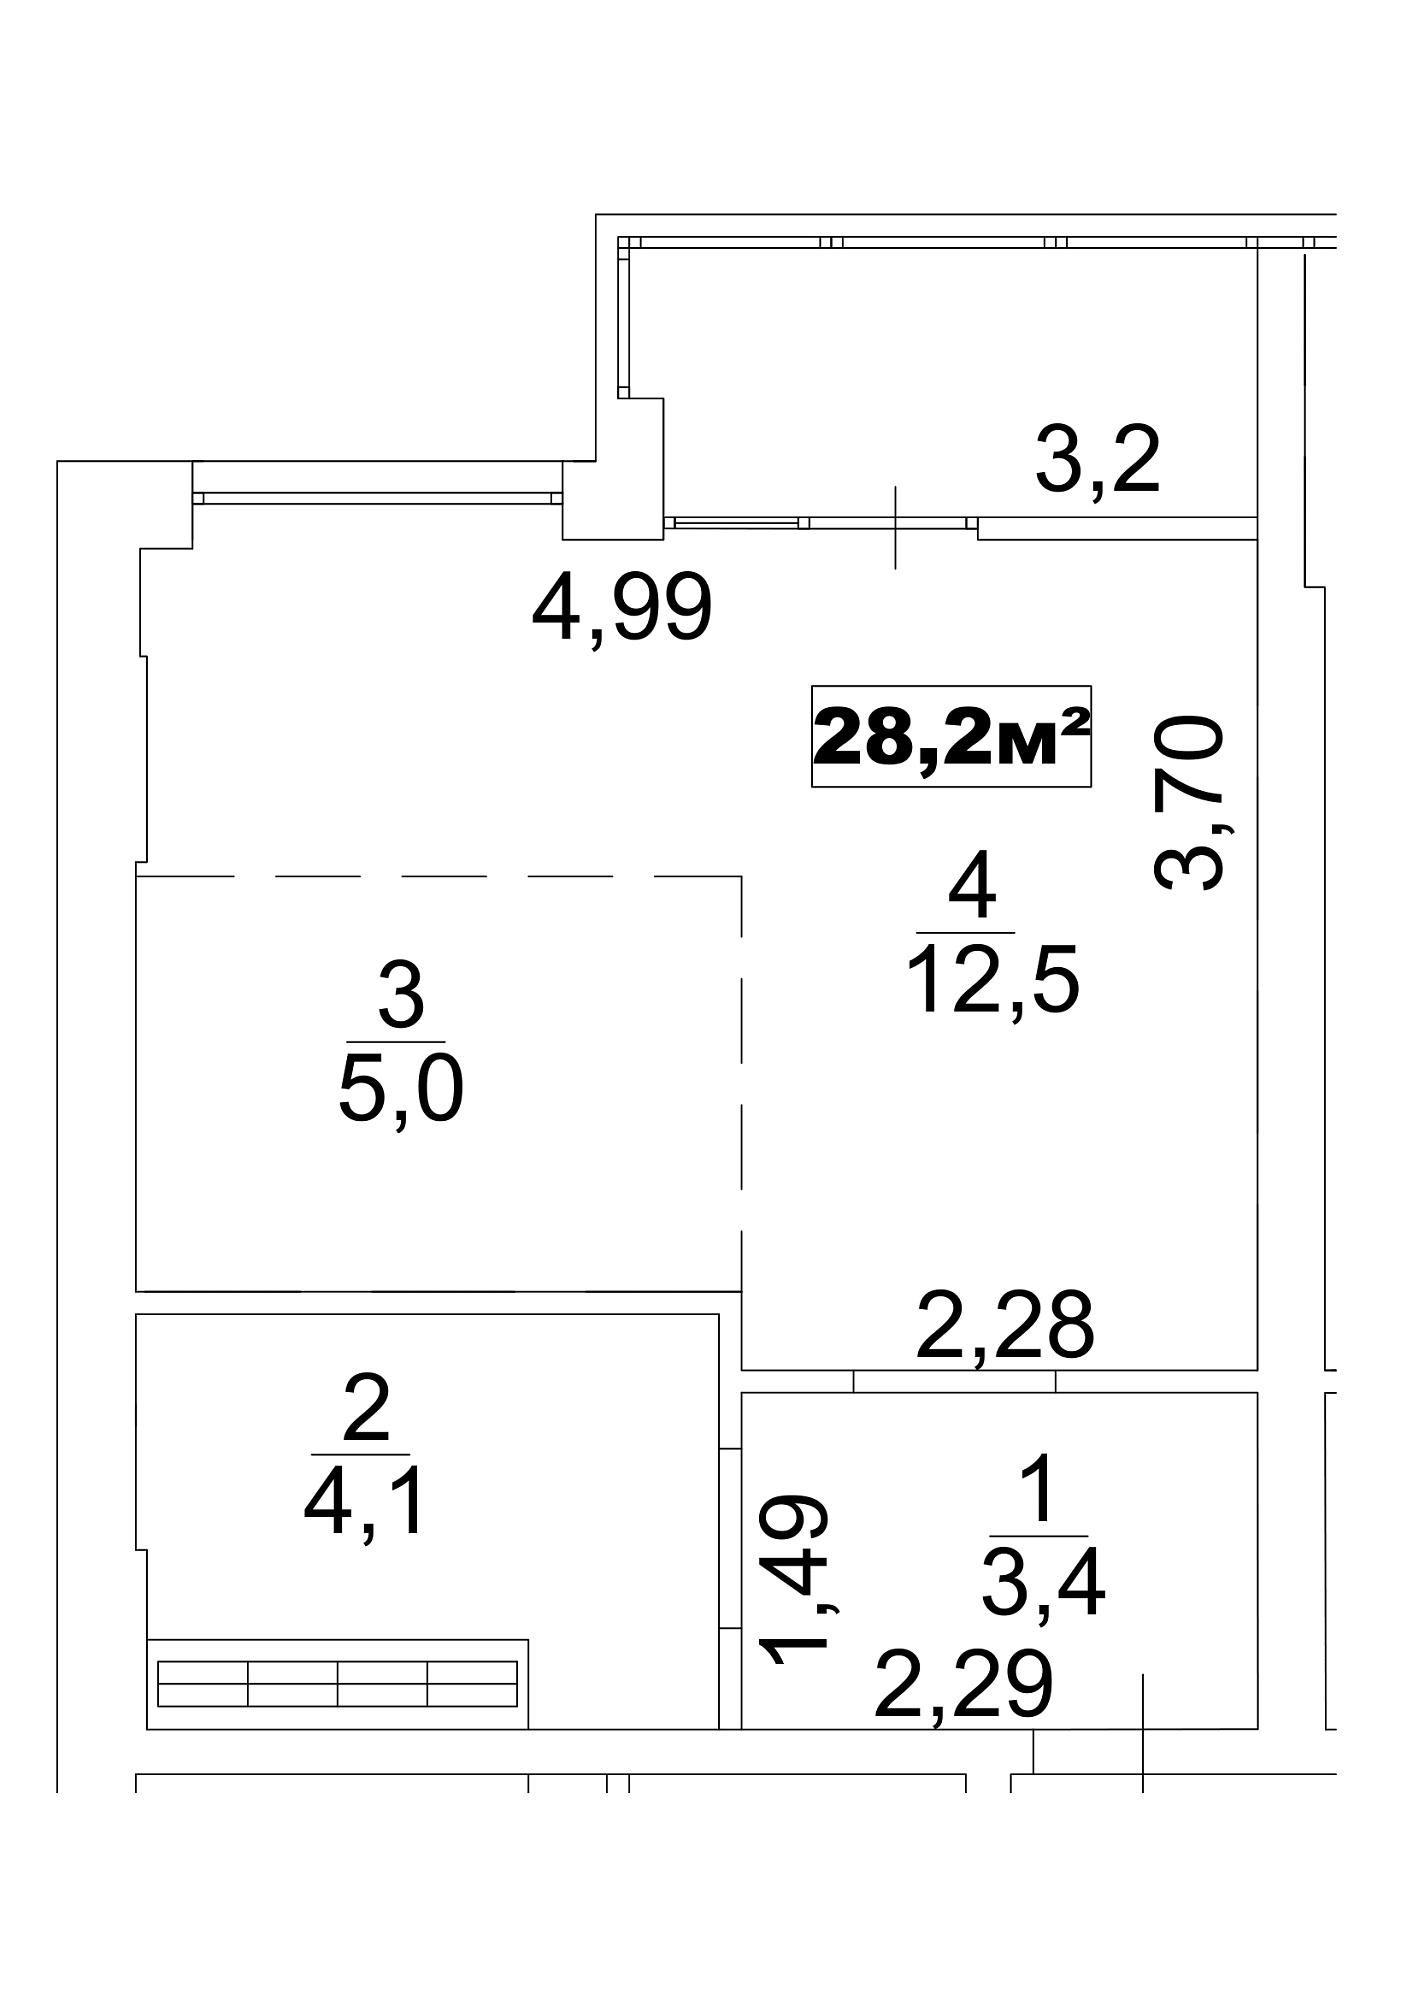 Планування Smart-квартира площею 28.2м2, AB-13-07/0054б.